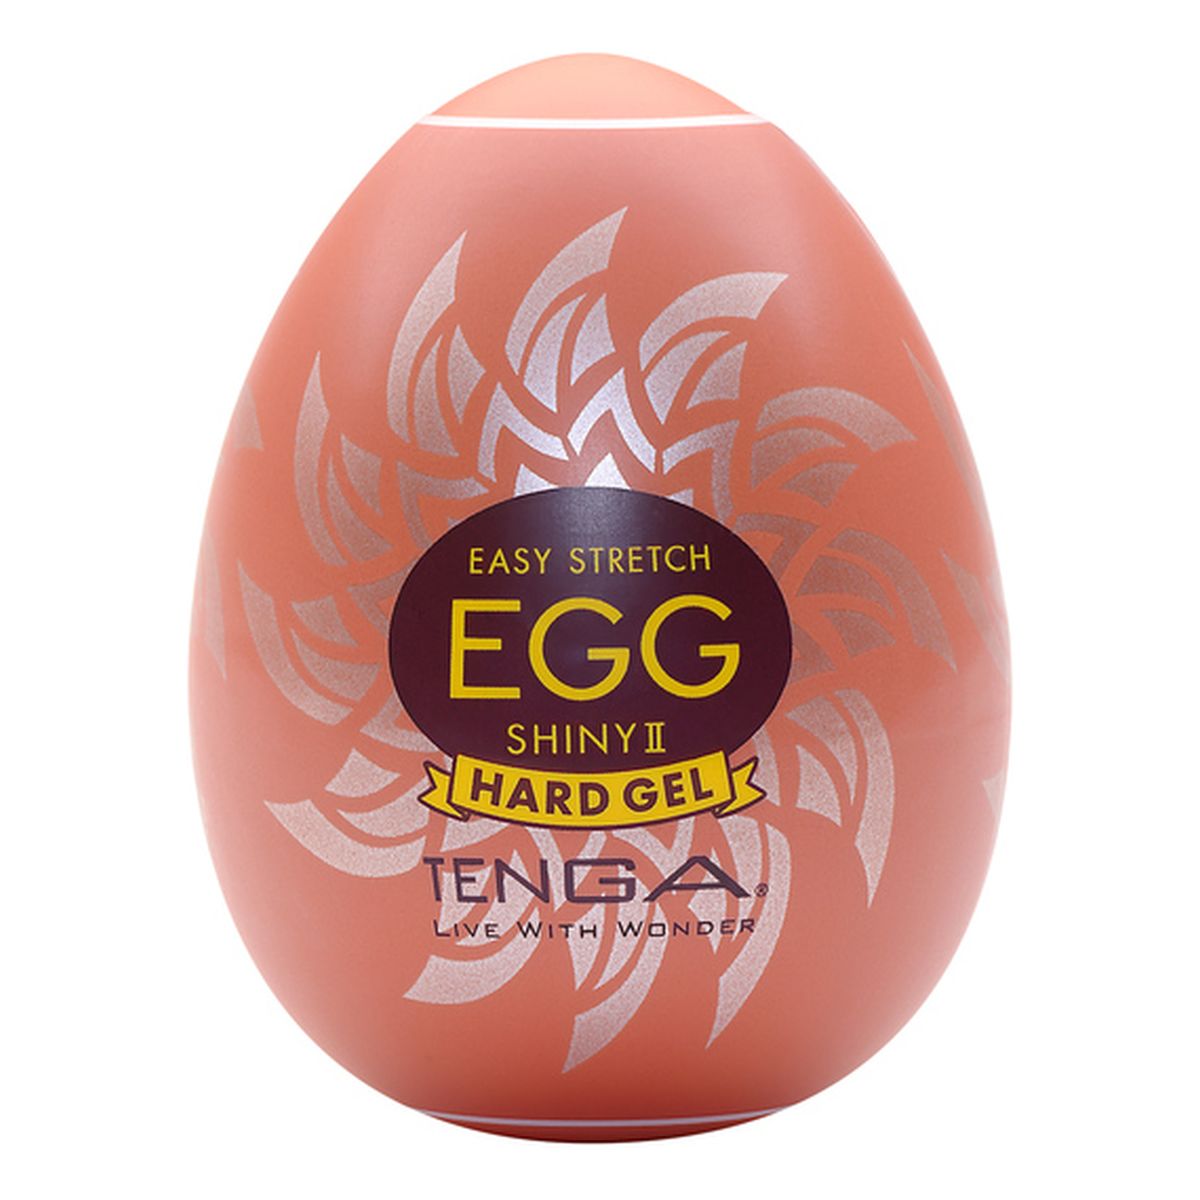 Tenga Easy stretch egg shiny ii hard gel jednorazowy masturbator w kształcie jajka